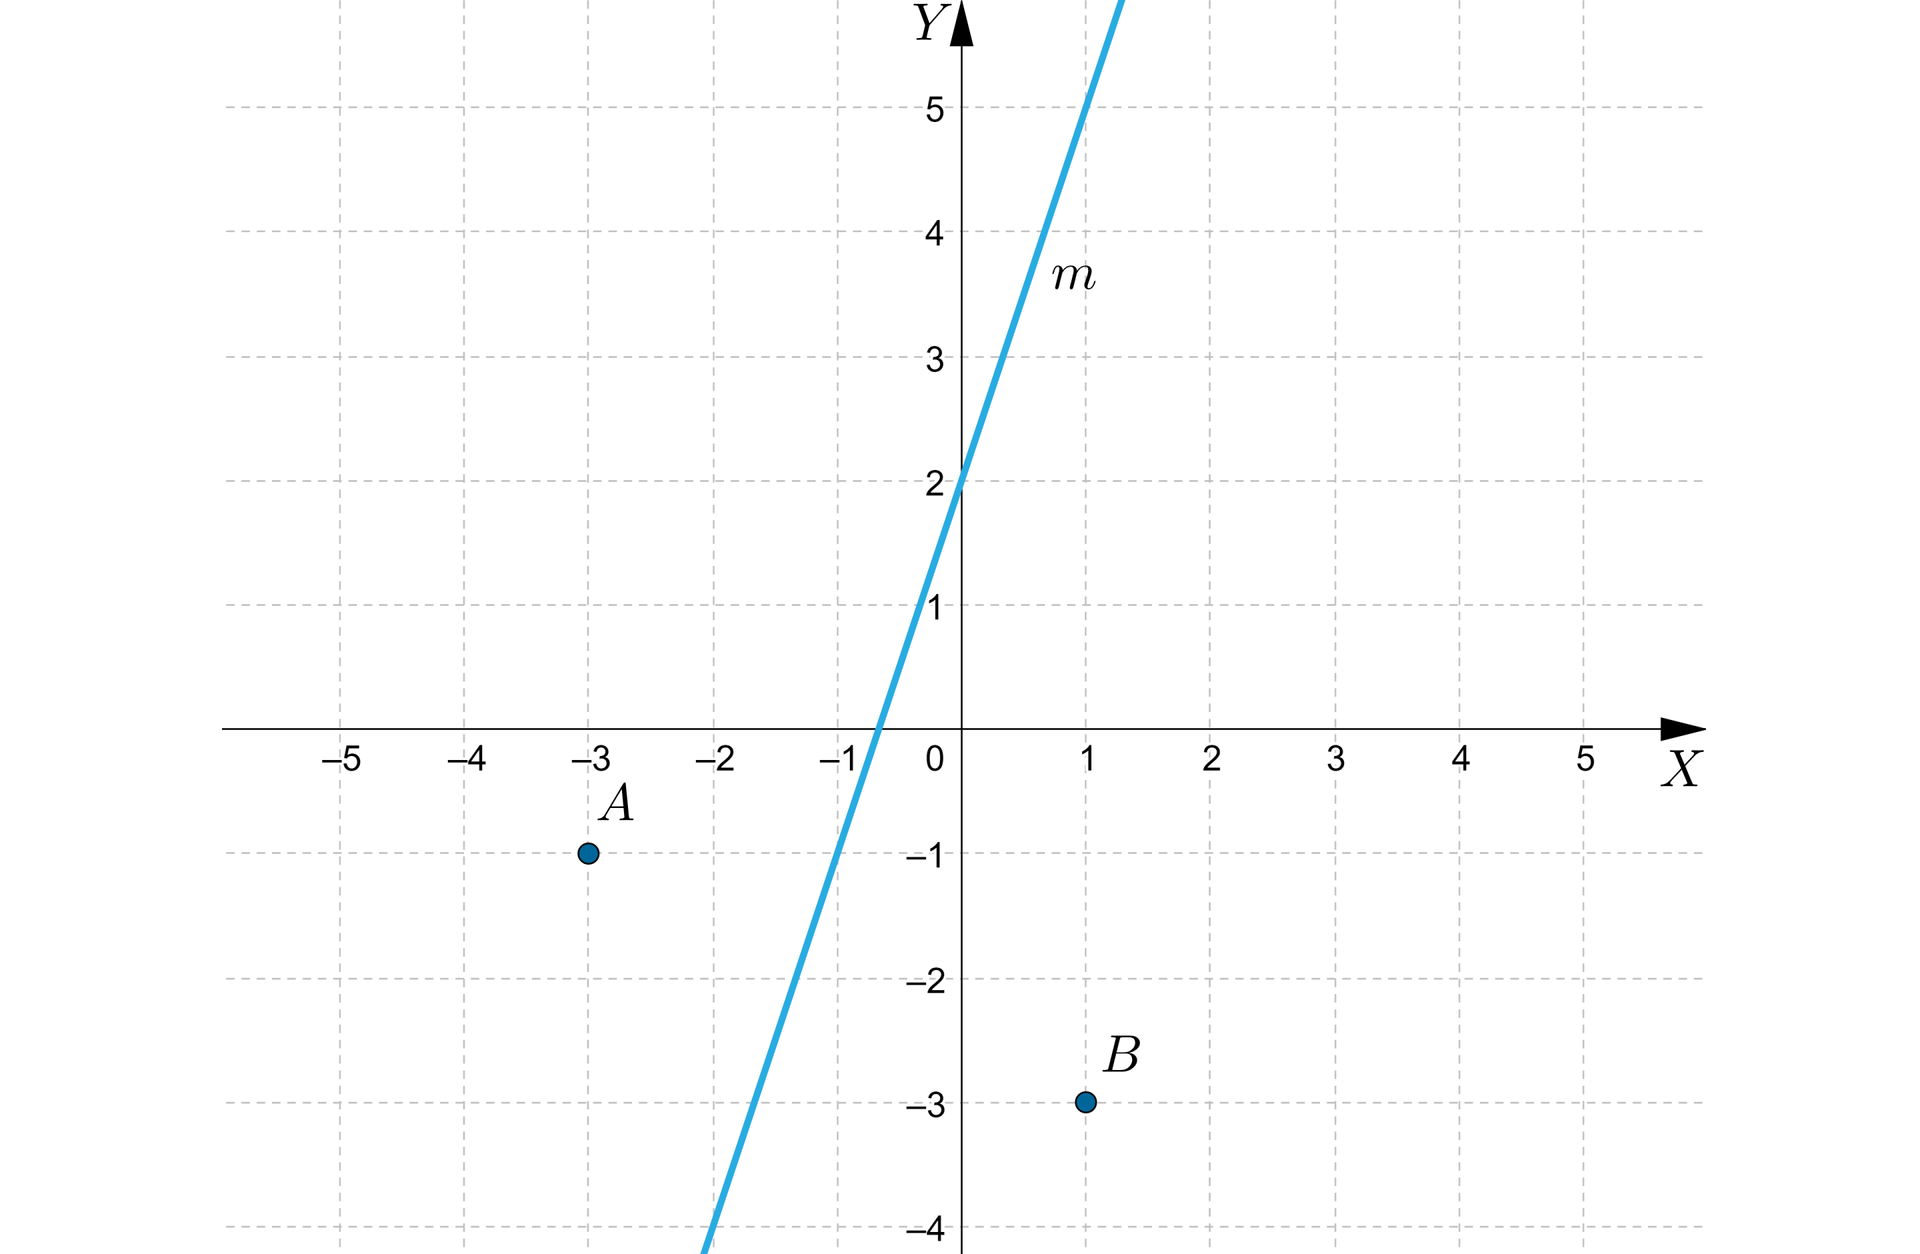 Ilustracja przedstawia układ współrzędnych z poziomą osią x od minus 5 do 5 i pionową osią y od minus 4 do pięciu. Na płaszczyźnie znajduje się prosta m oraz dwa punkty A i B. Prosta jest ukośna i przecina oś y w punkcie: początek nawiasu, 0, 2, zamknięcie nawiasu. Współrzędne punktów to kolejno: punkt A: początek nawiasu, minus 3, minus 1, zamknięcie nawiasu oraz punkt B: początek nawiasu, 1, minus 3, zamknięcie nawiasu.